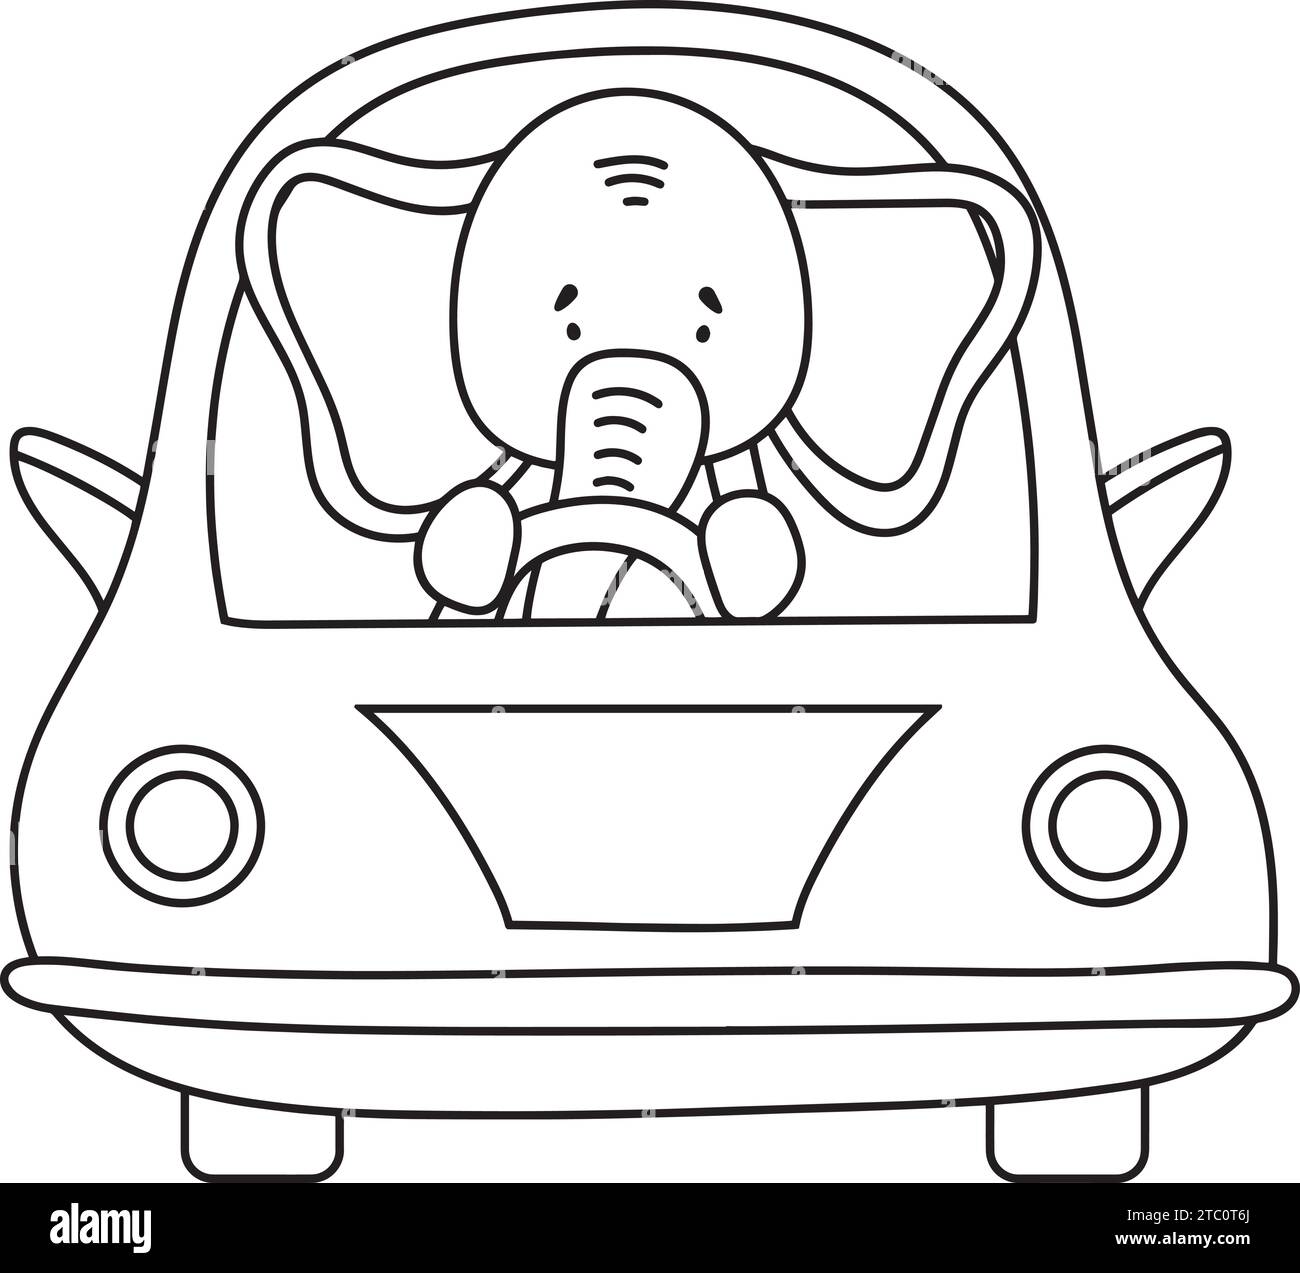 Pagina da colorare per bambini: Elephant Driving A Car, r, è Un libro da colorare divertente e creativo di illustrazioni vettoriali per bambini Illustrazione Vettoriale